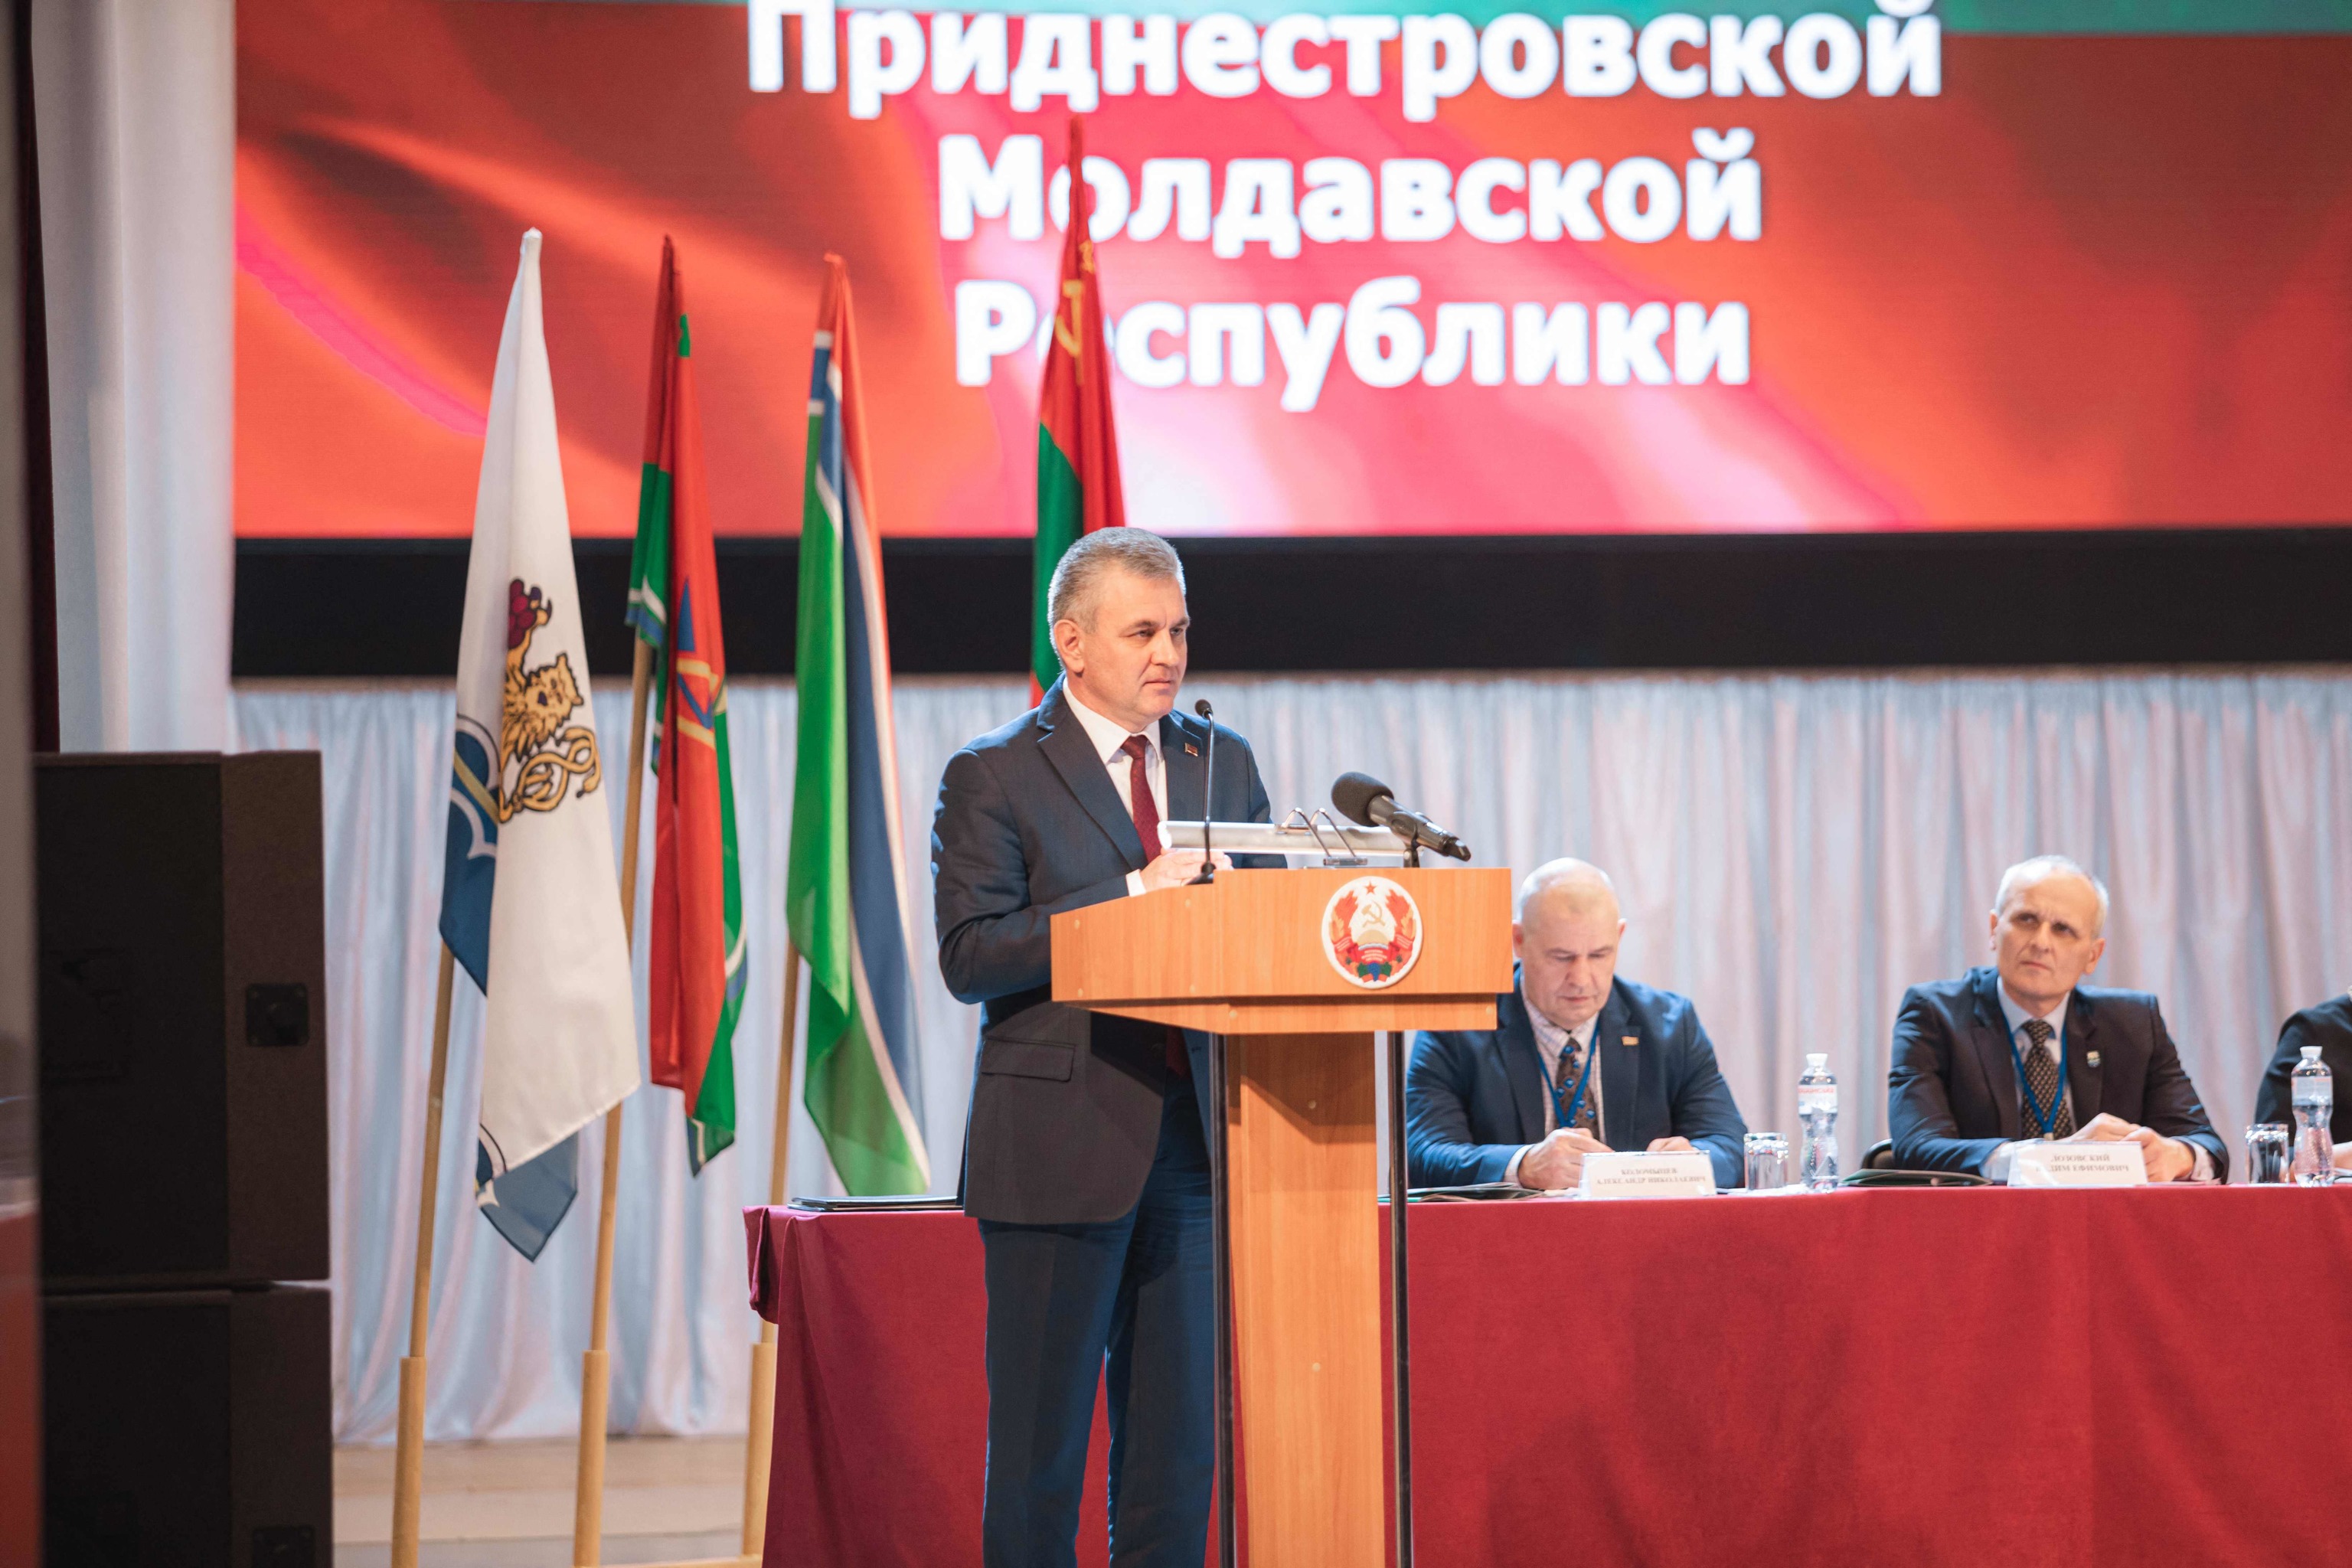 Vadim Krasnoselsky, lder prorruso de Transnistria, ante sus diputados.